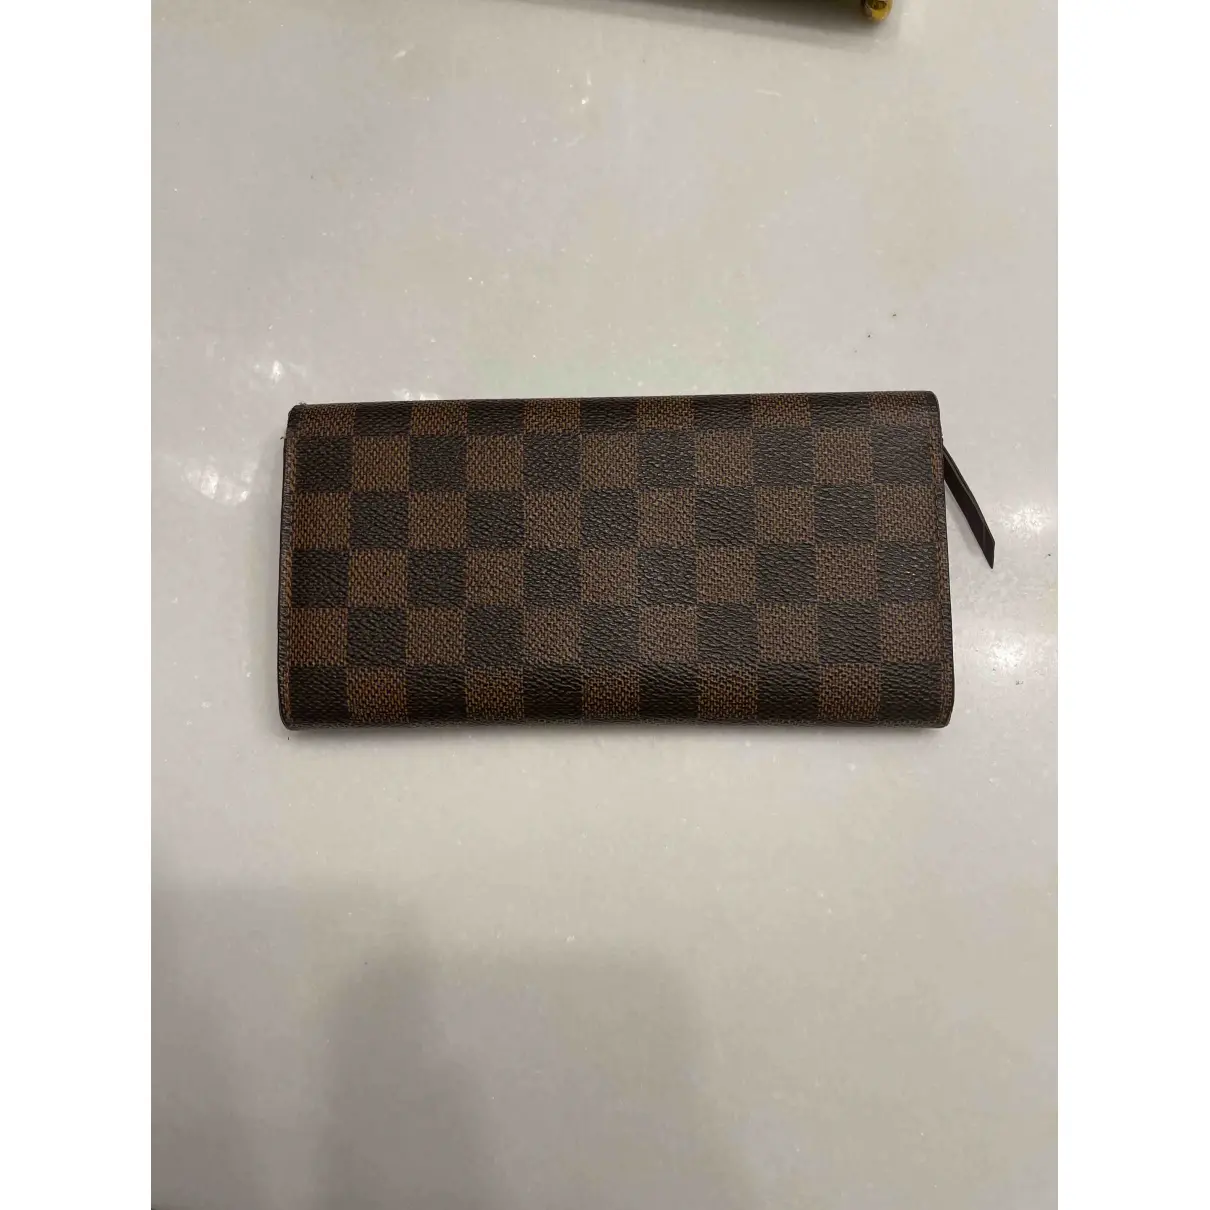 Buy Louis Vuitton Emilie cloth wallet online